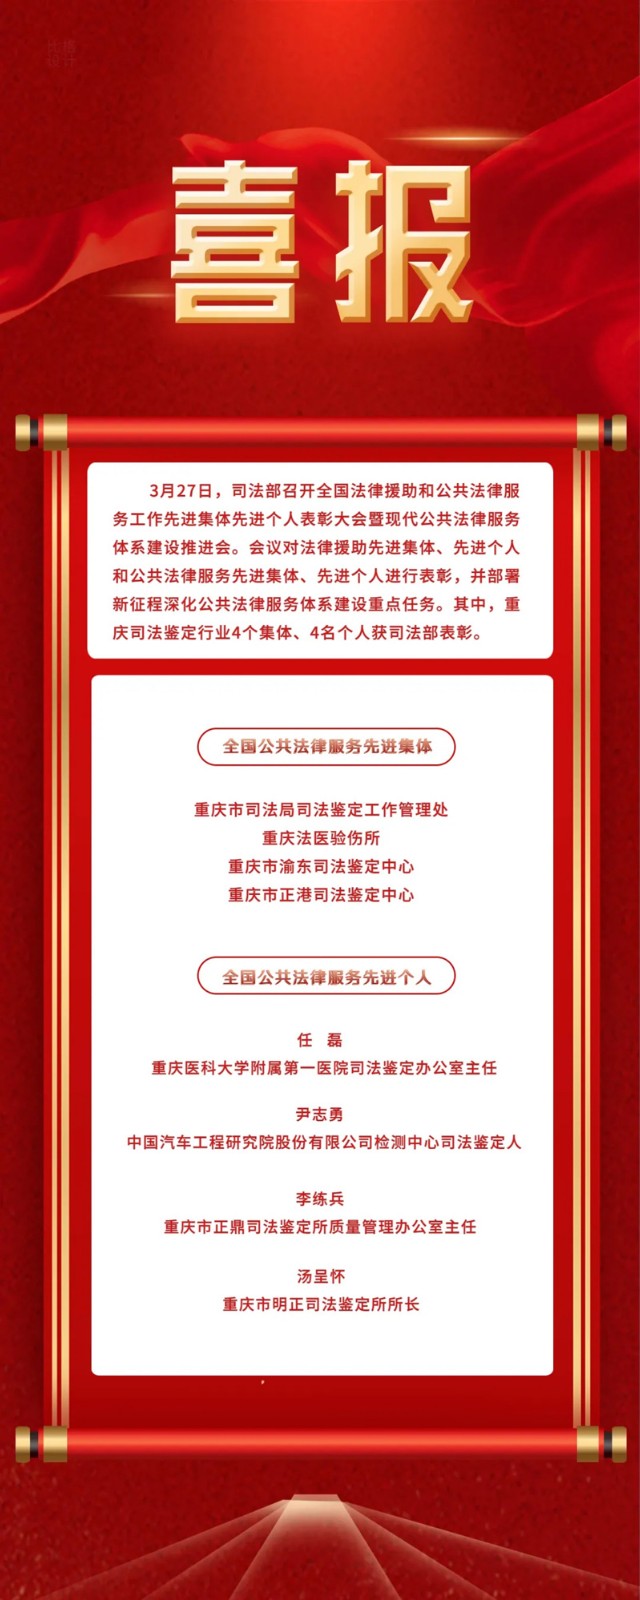 喜报！重庆市司法鉴定行业4个集体、4名个人获司法部表彰